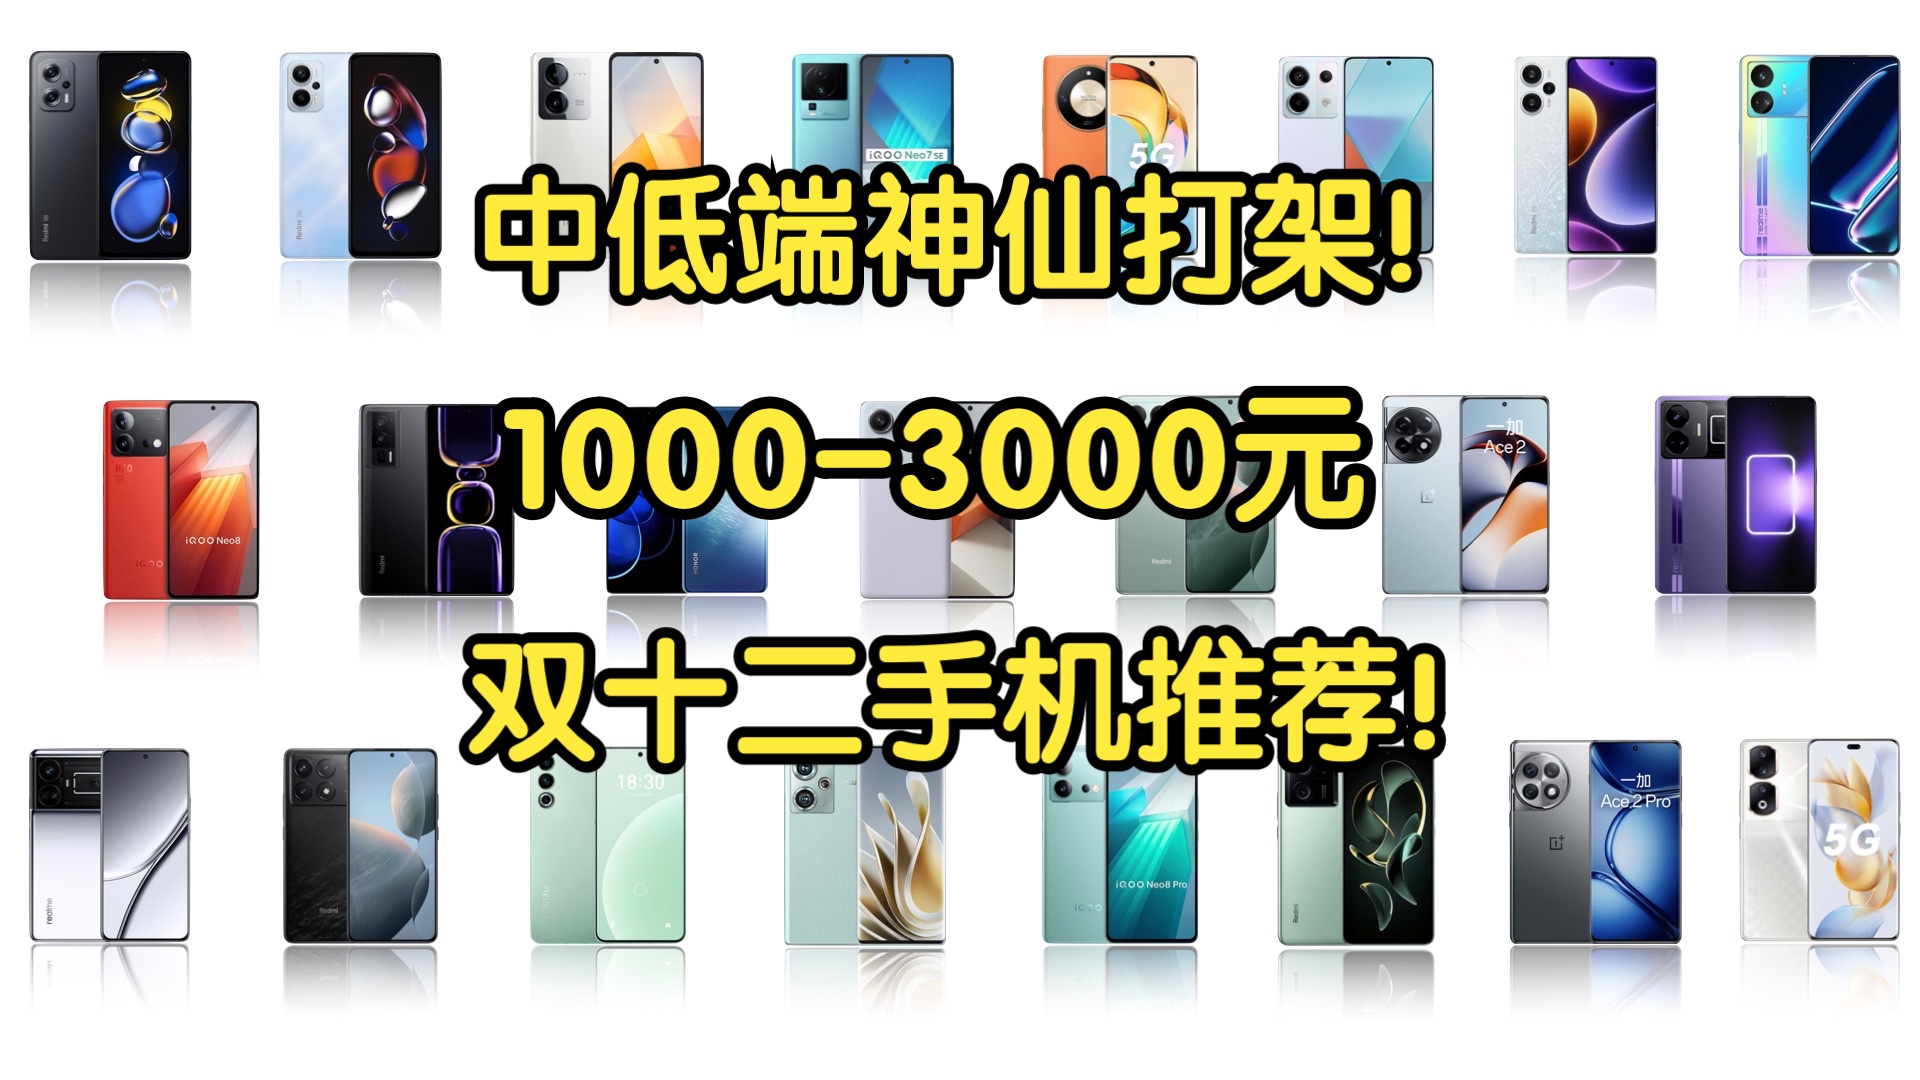 【Caibao】双十二1000-3000元手机大推荐！中低端神仙打架！性价比超高！建议收藏！